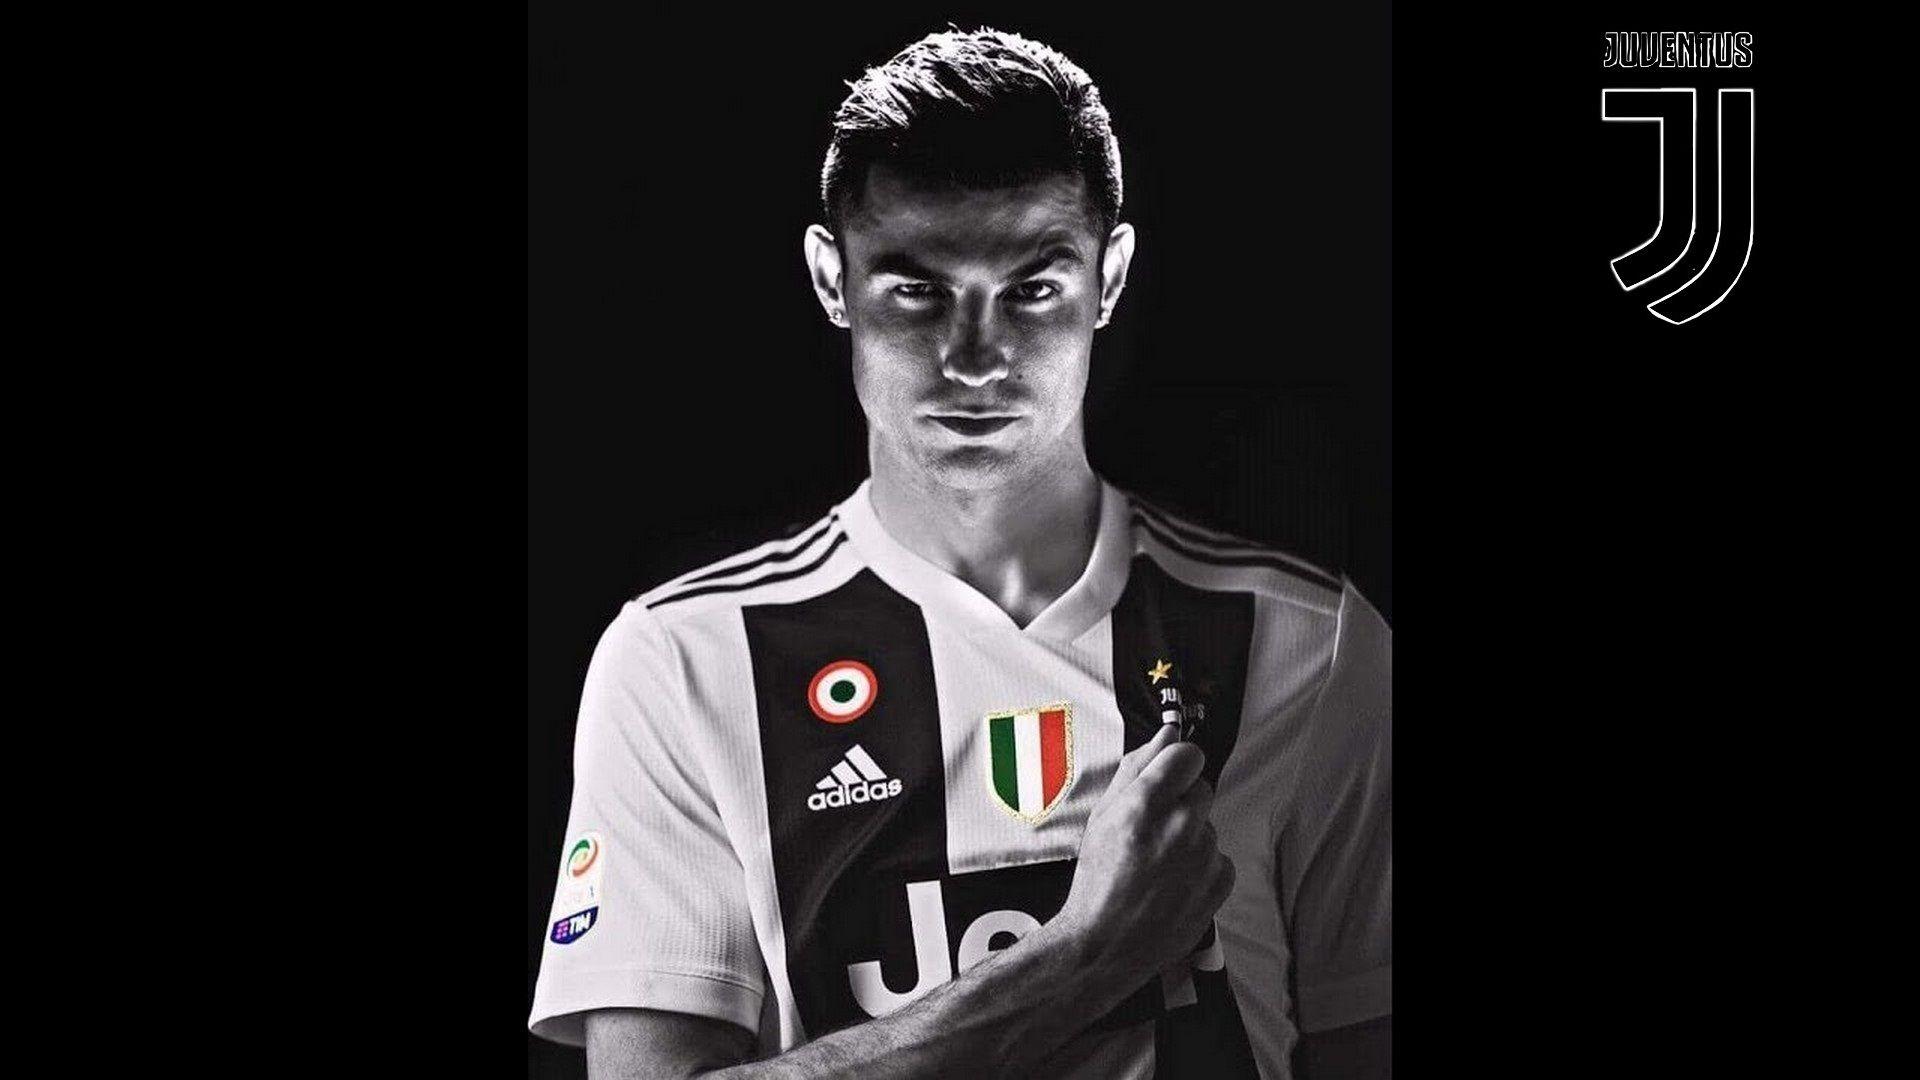 Ronaldo Juventus Wallpapers - Wallpaper Cave